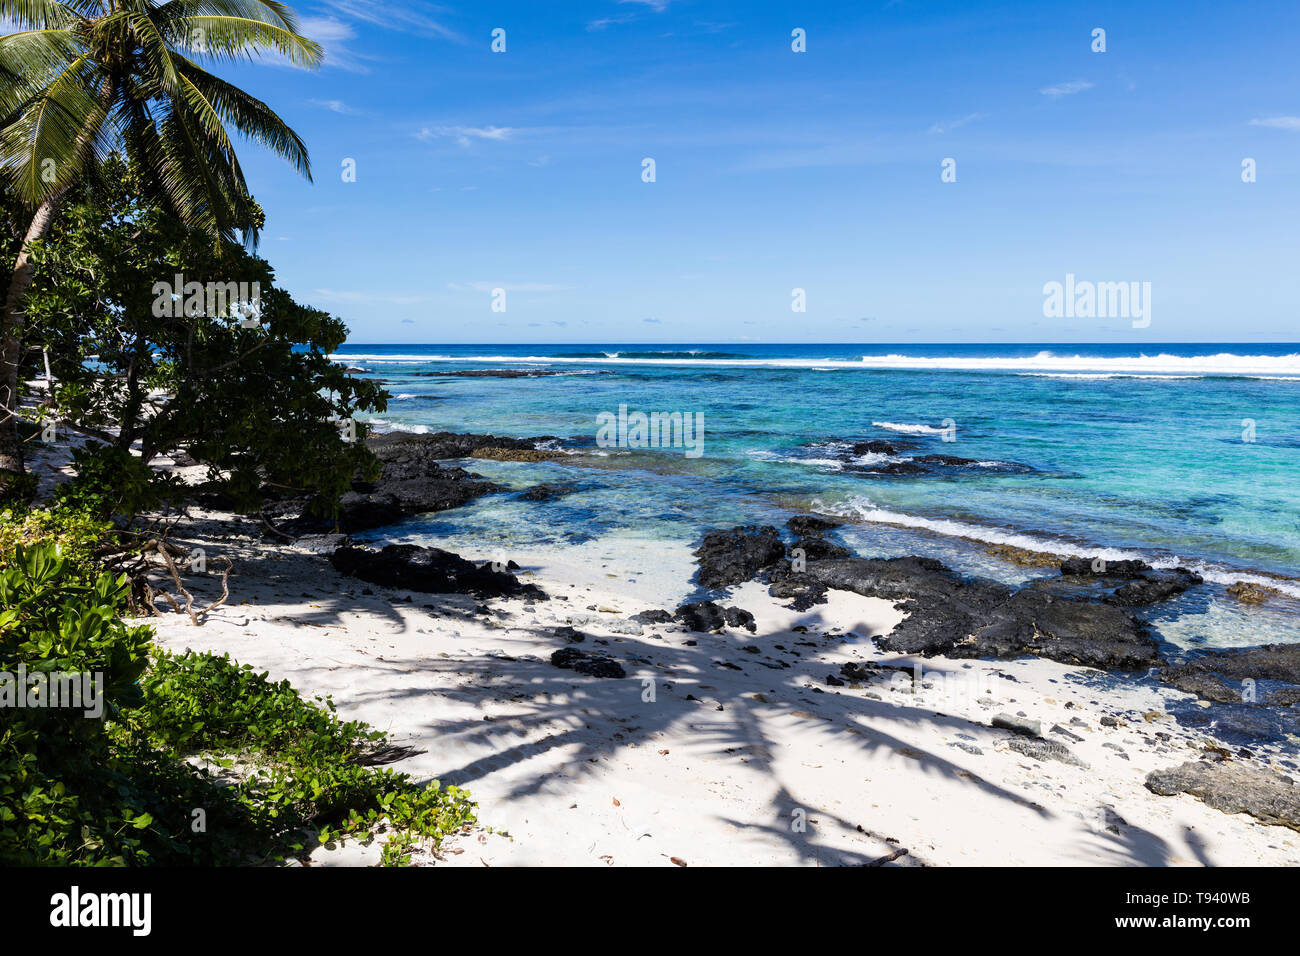 Vista paisaje tropical en la playa en la Polinesia con perfecta de arena blanca, palmeras, sombra de palmeras en primer plano, el océano, con aguas color turquesa y profunda b Foto de stock